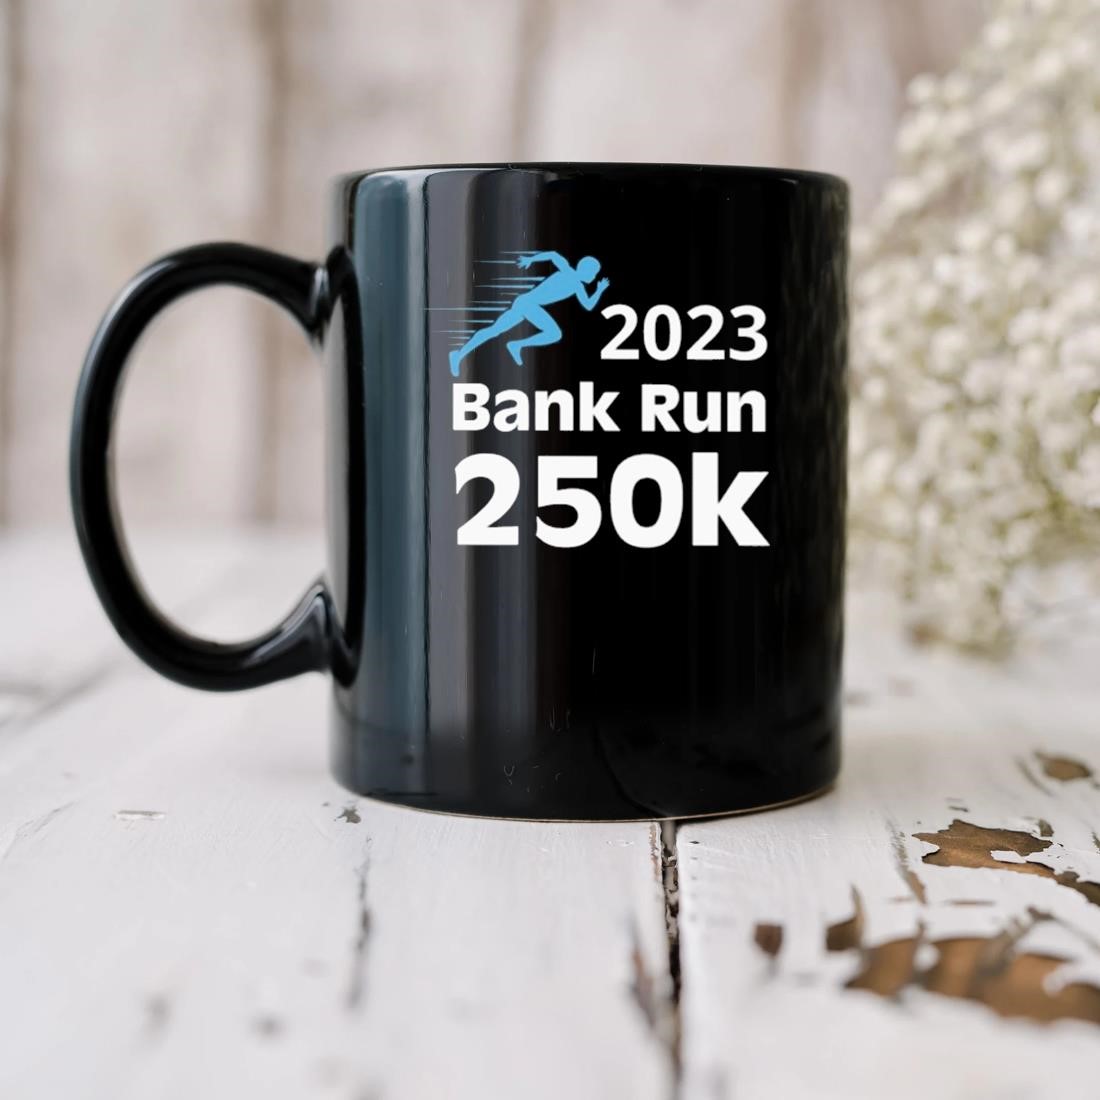 Svb 2023 Bank Run 250k Mug